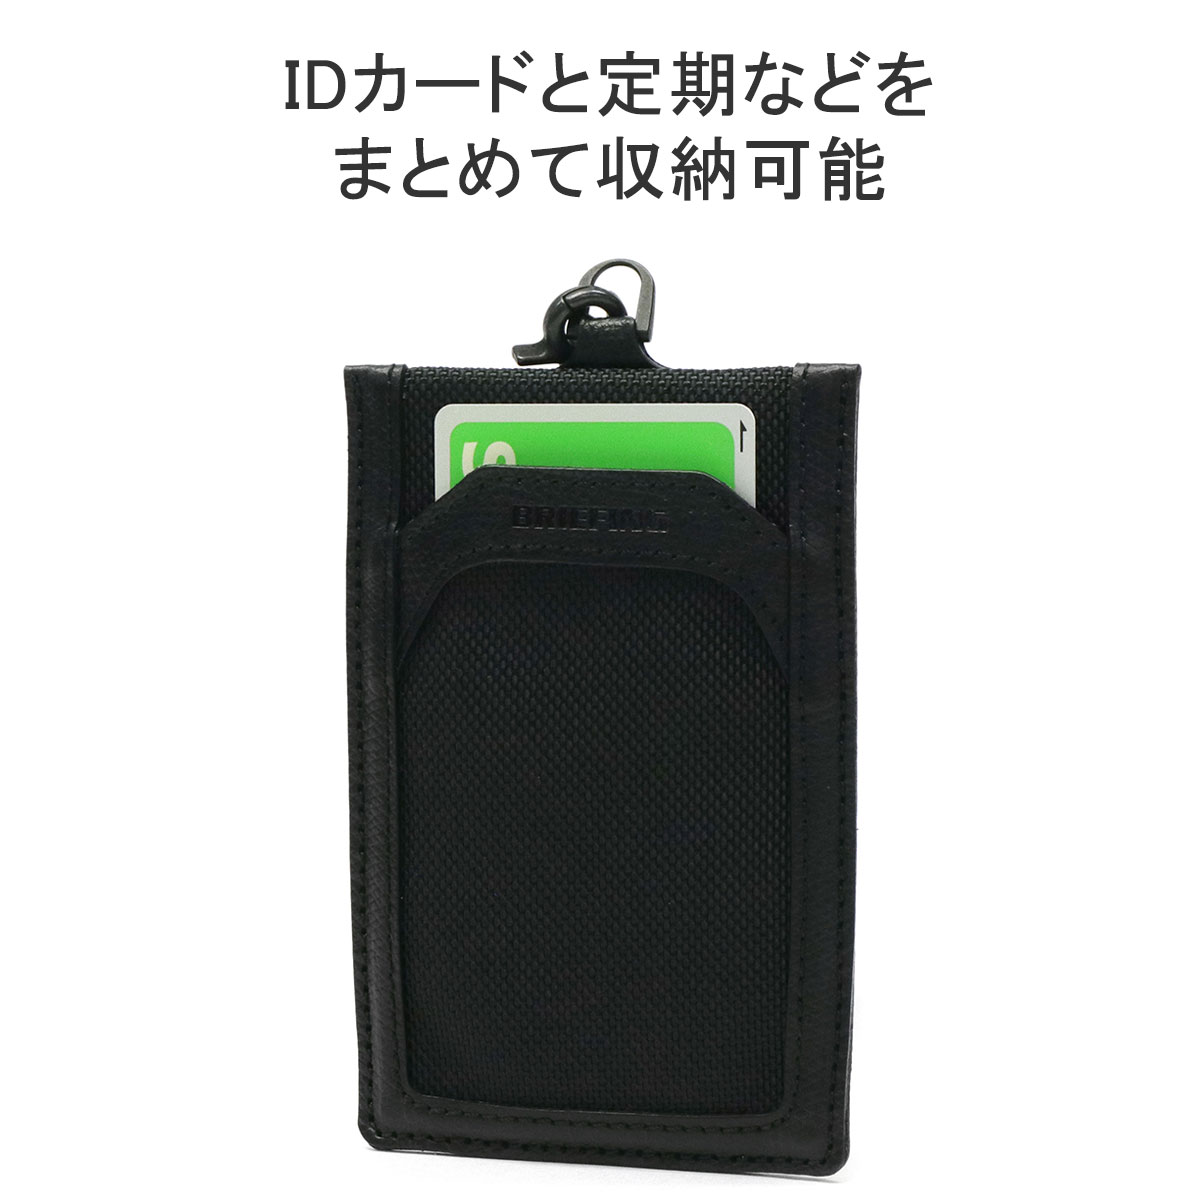 最大43%★11/28迄 日本正規品 ブリーフィング IDケース BRIEFING FUSION TALL ID 名札 社員証 IDカード 縦型  IDカードホルダー IDカードケース BRA221A31